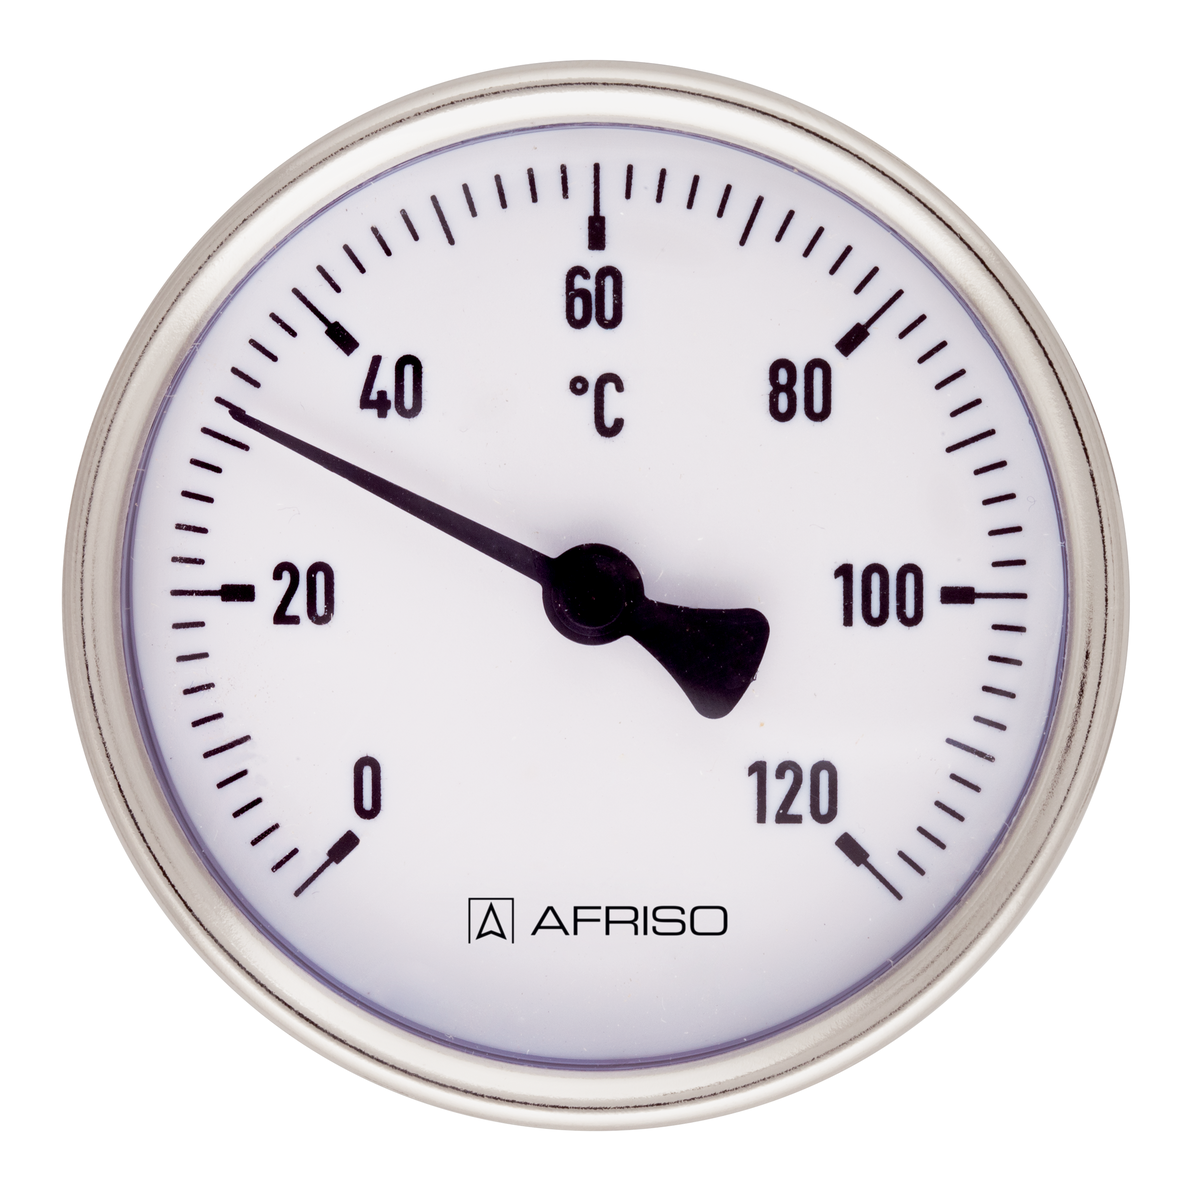 Bimetalový teploměr BiTh 80 ST, Ø 80 mm, -20 ÷ 60 °C, délka jímky 40 mm, G½", axiální - AFRISO.CZ